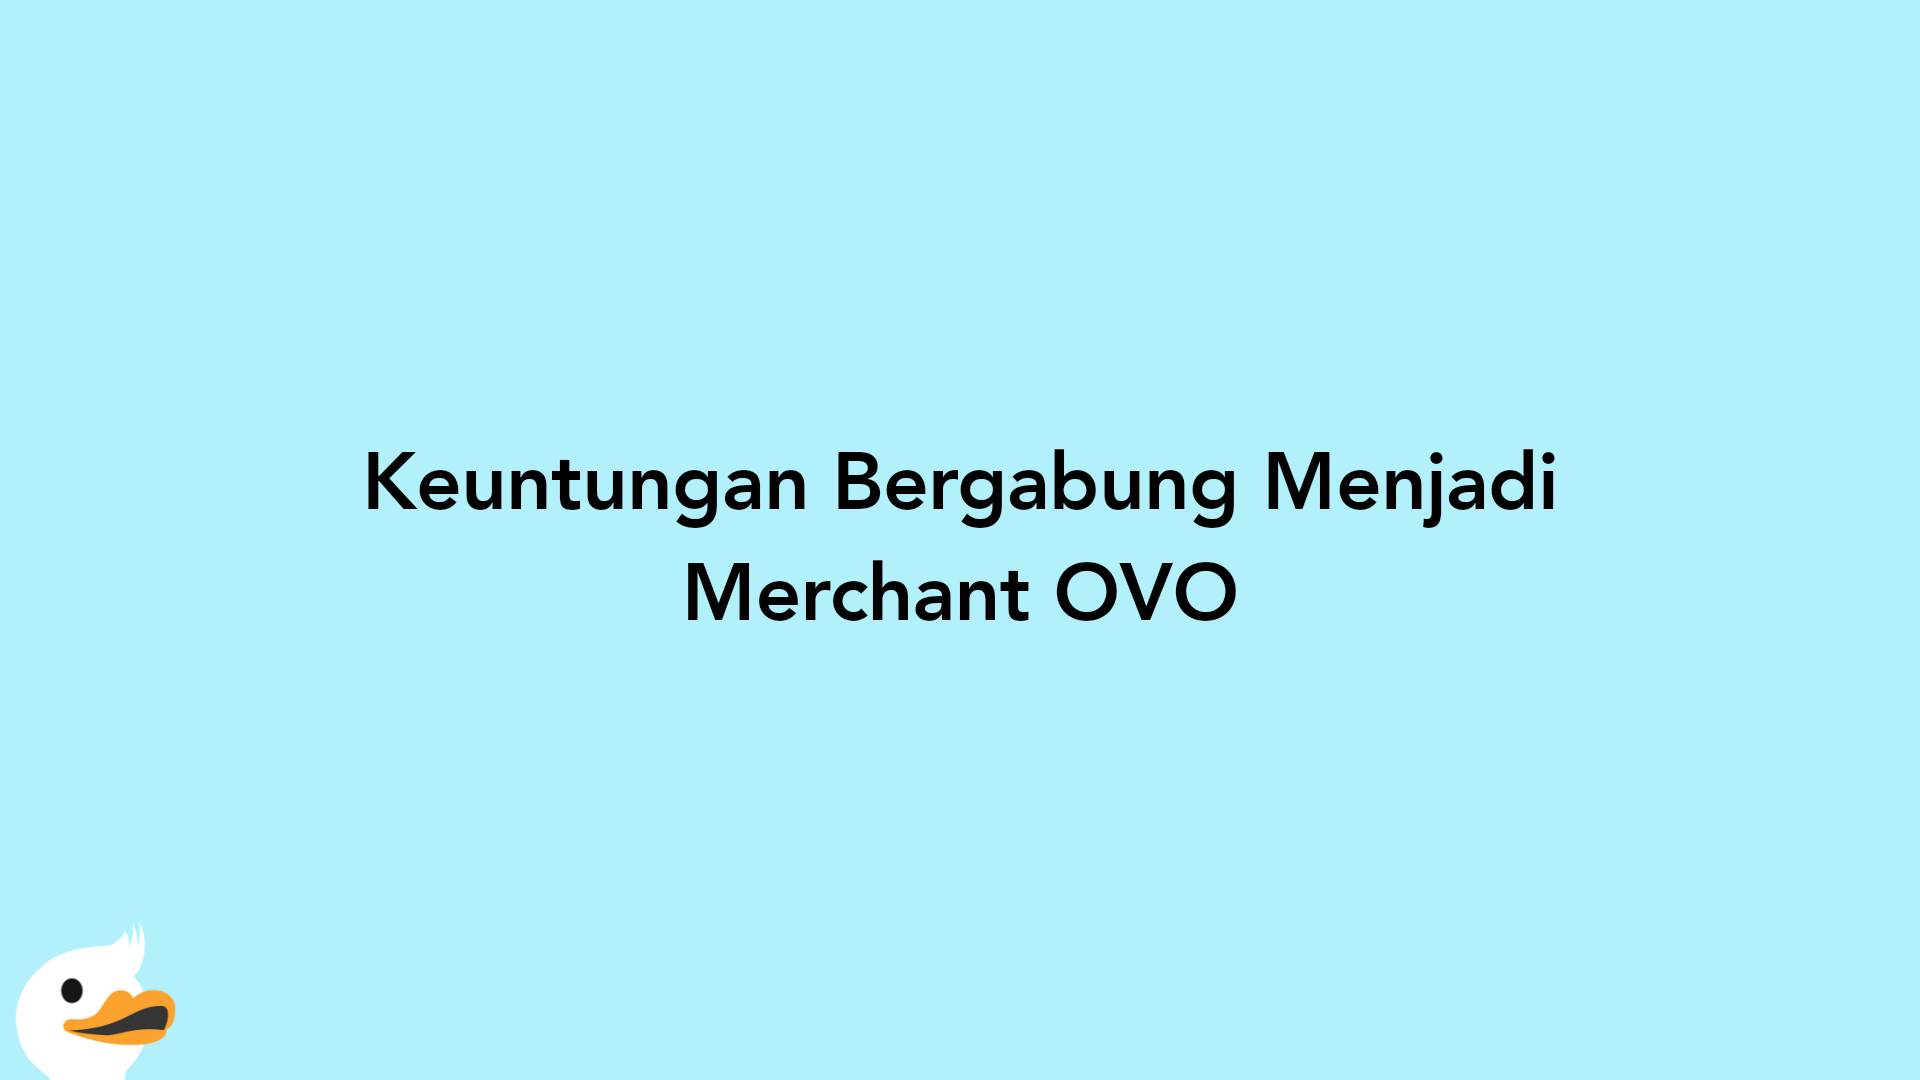 Keuntungan Bergabung Menjadi Merchant OVO